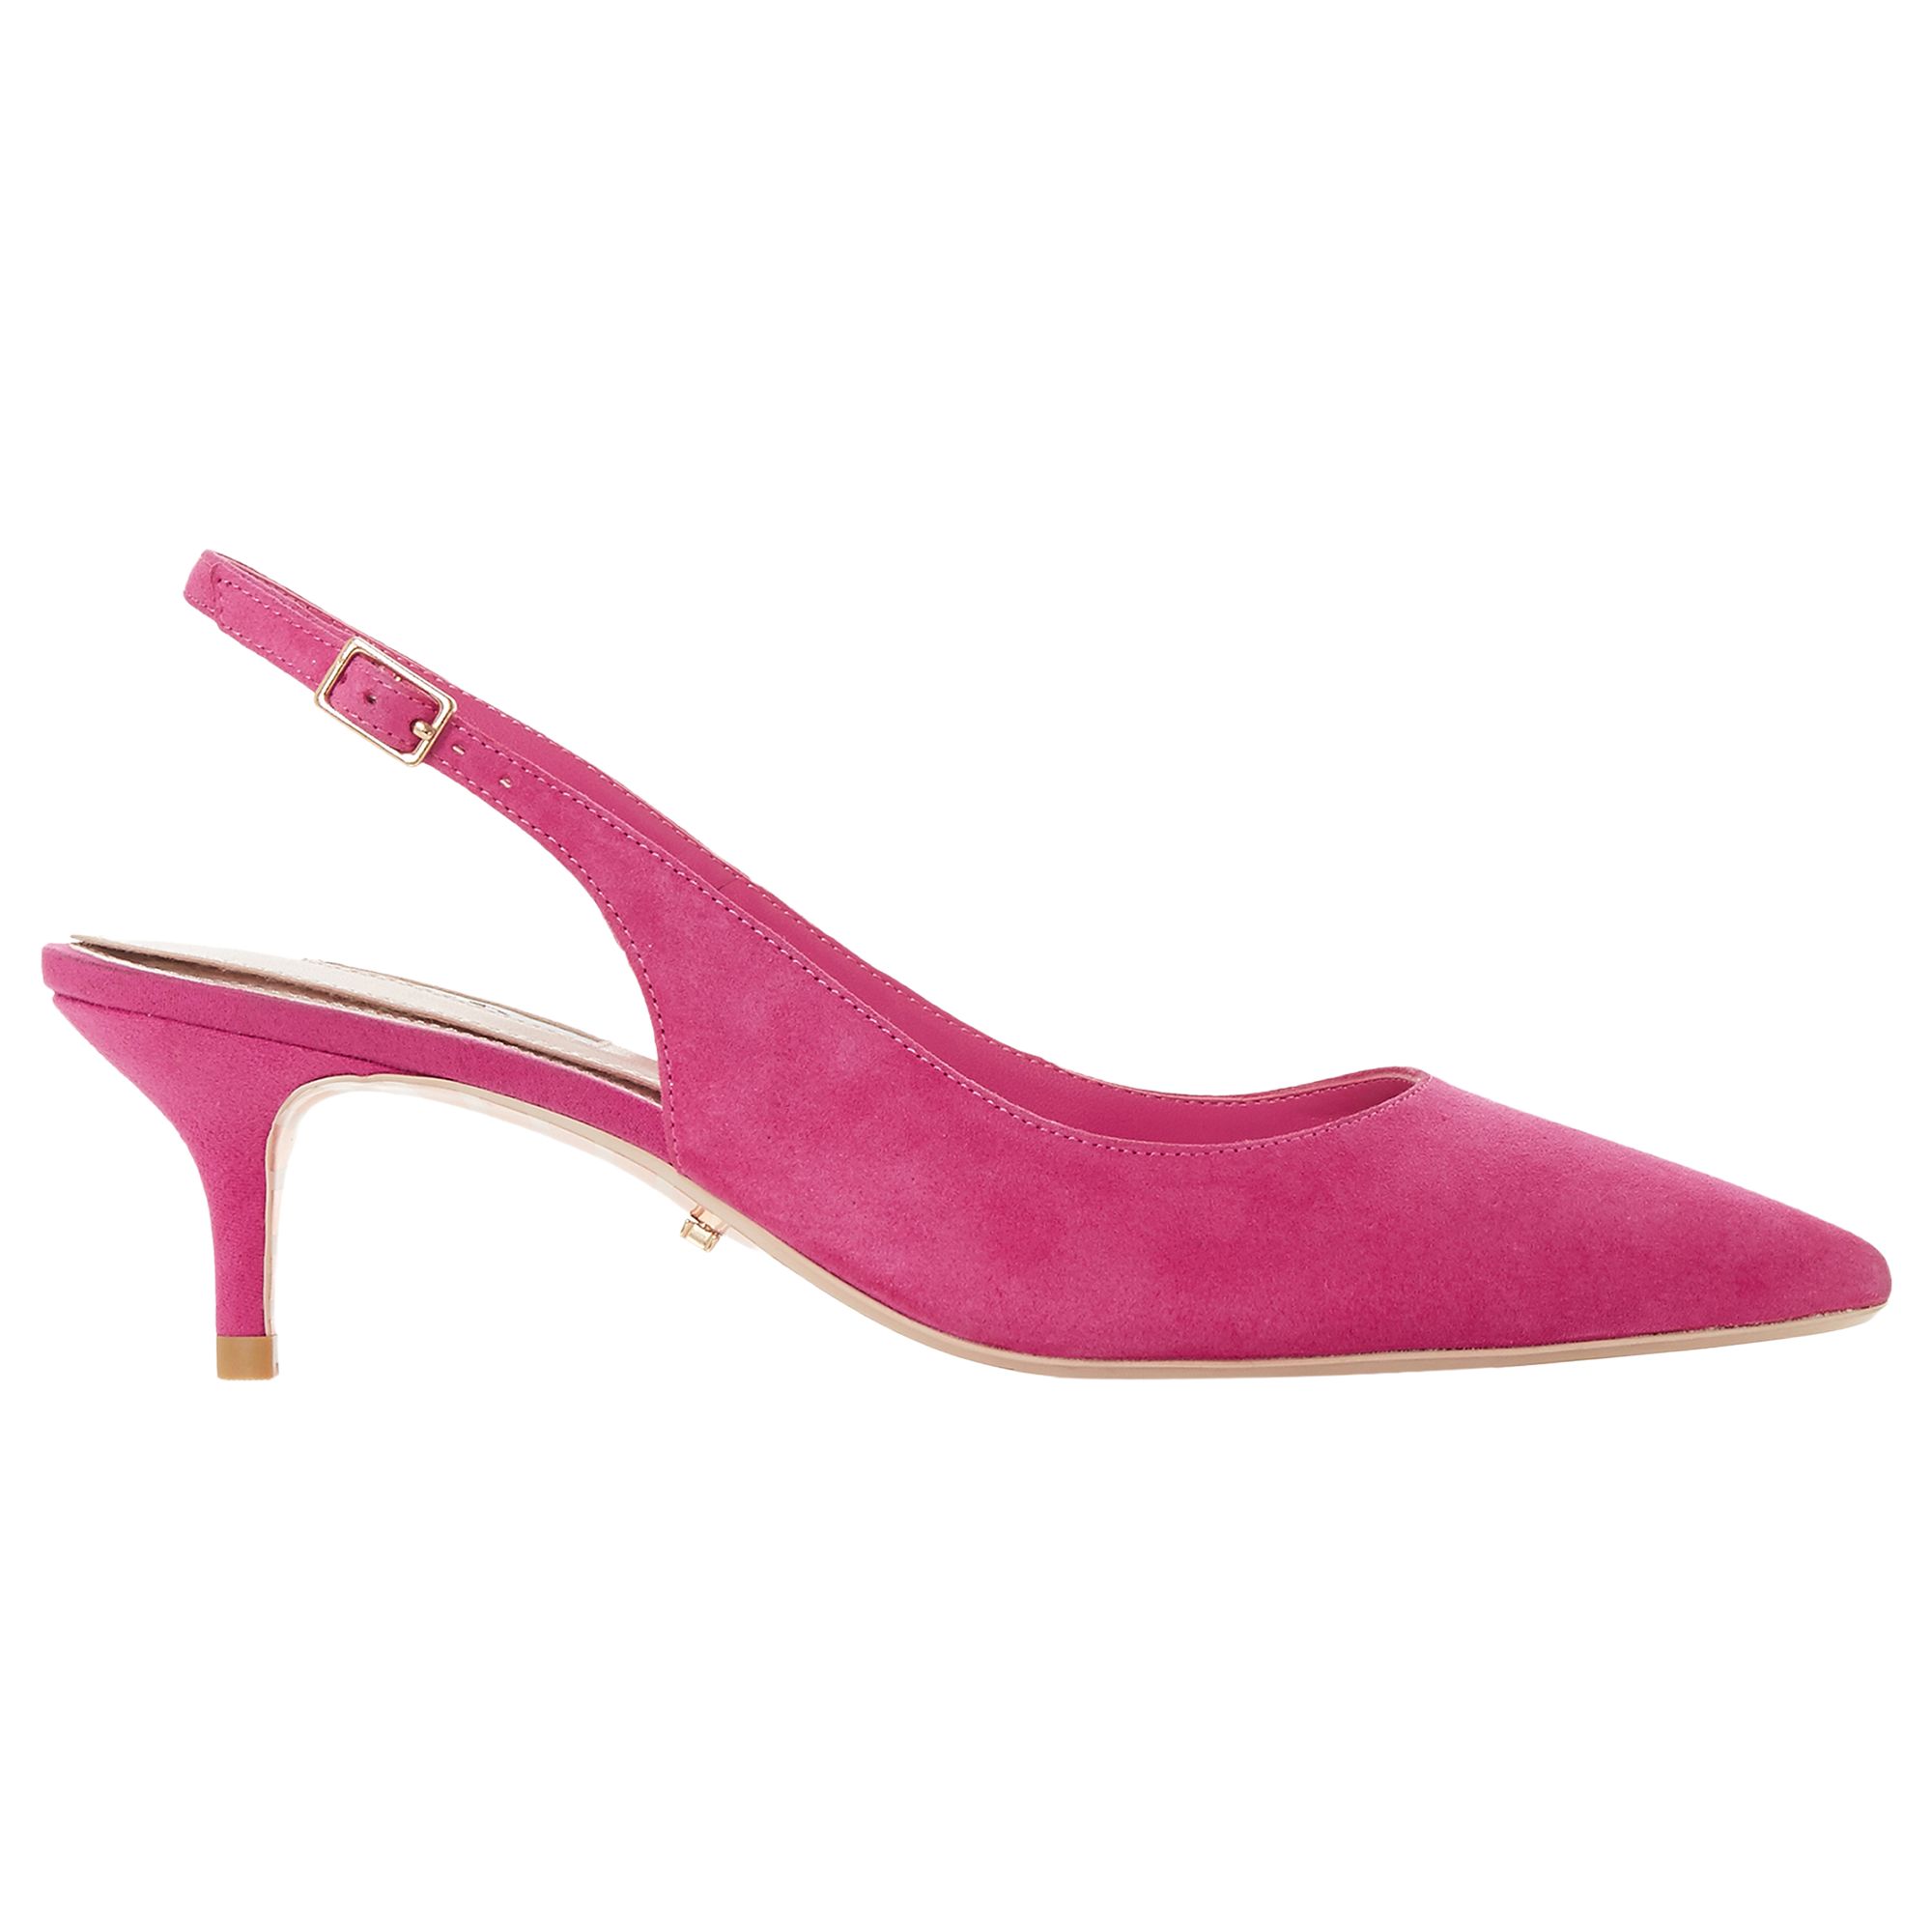 Dune Casandra Kitten Heel Slingback Court Shoes, Pink Suede, 4